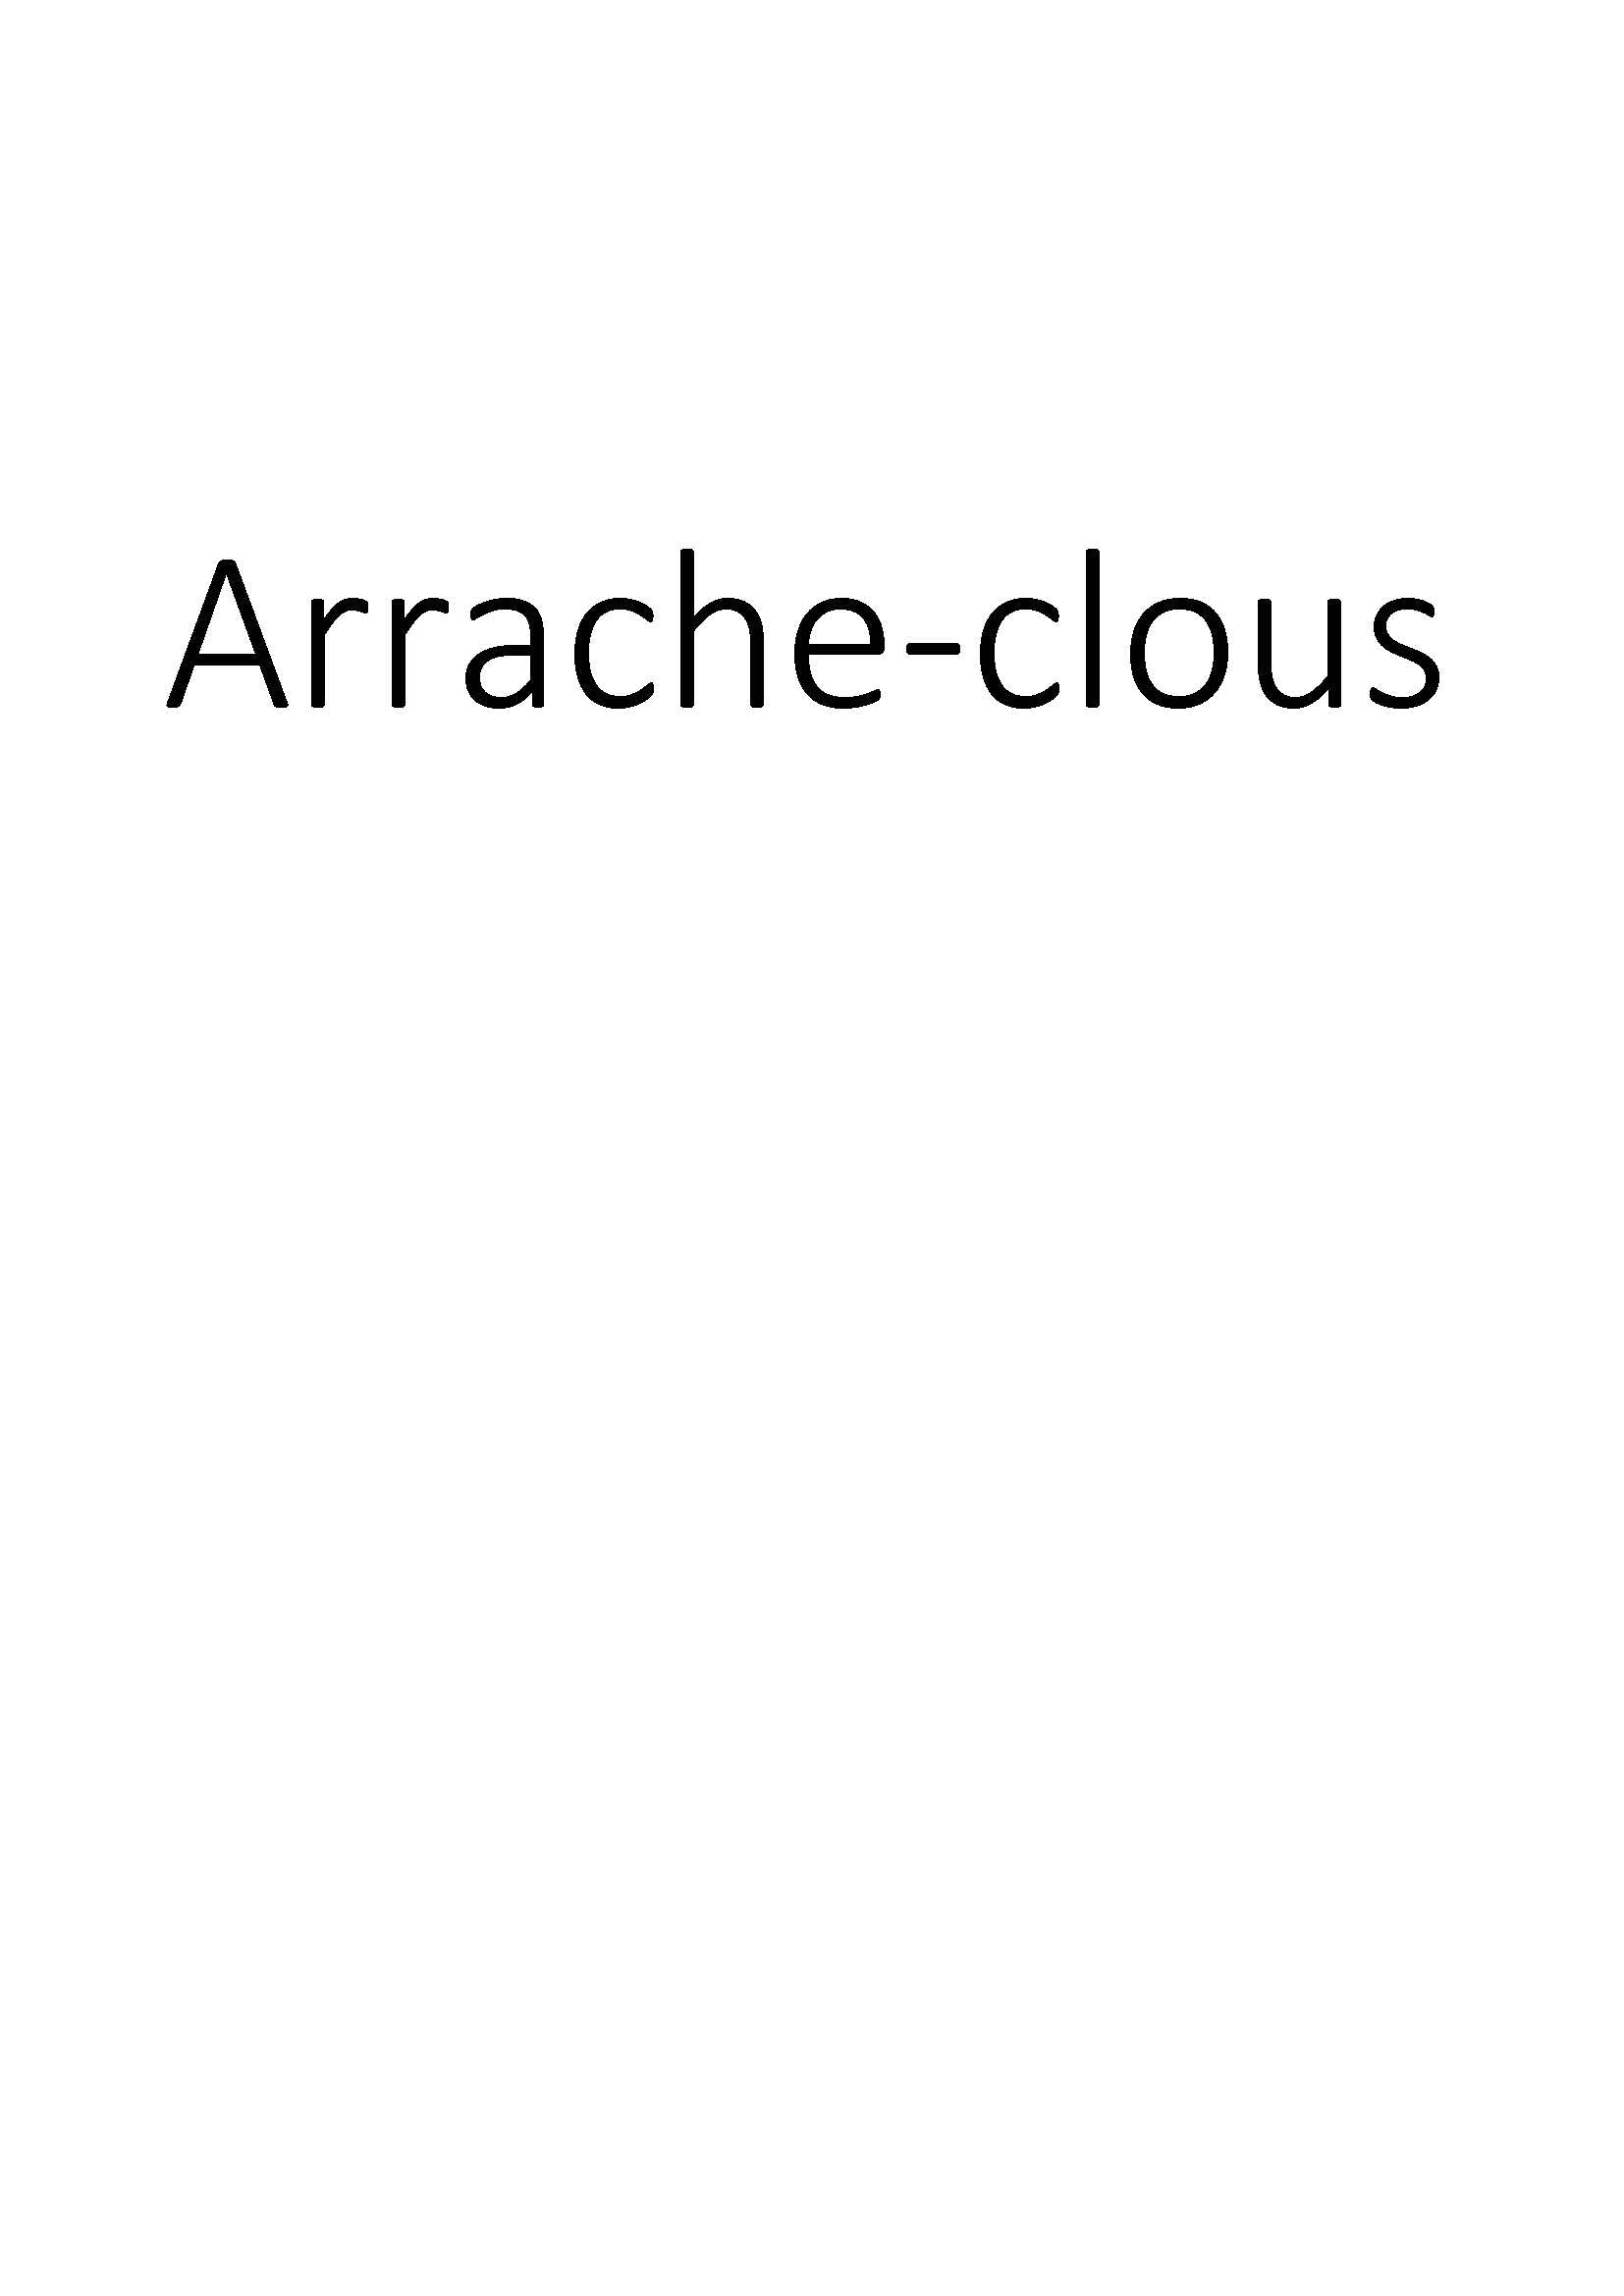 Arrache-clous clicktofournisseur.com